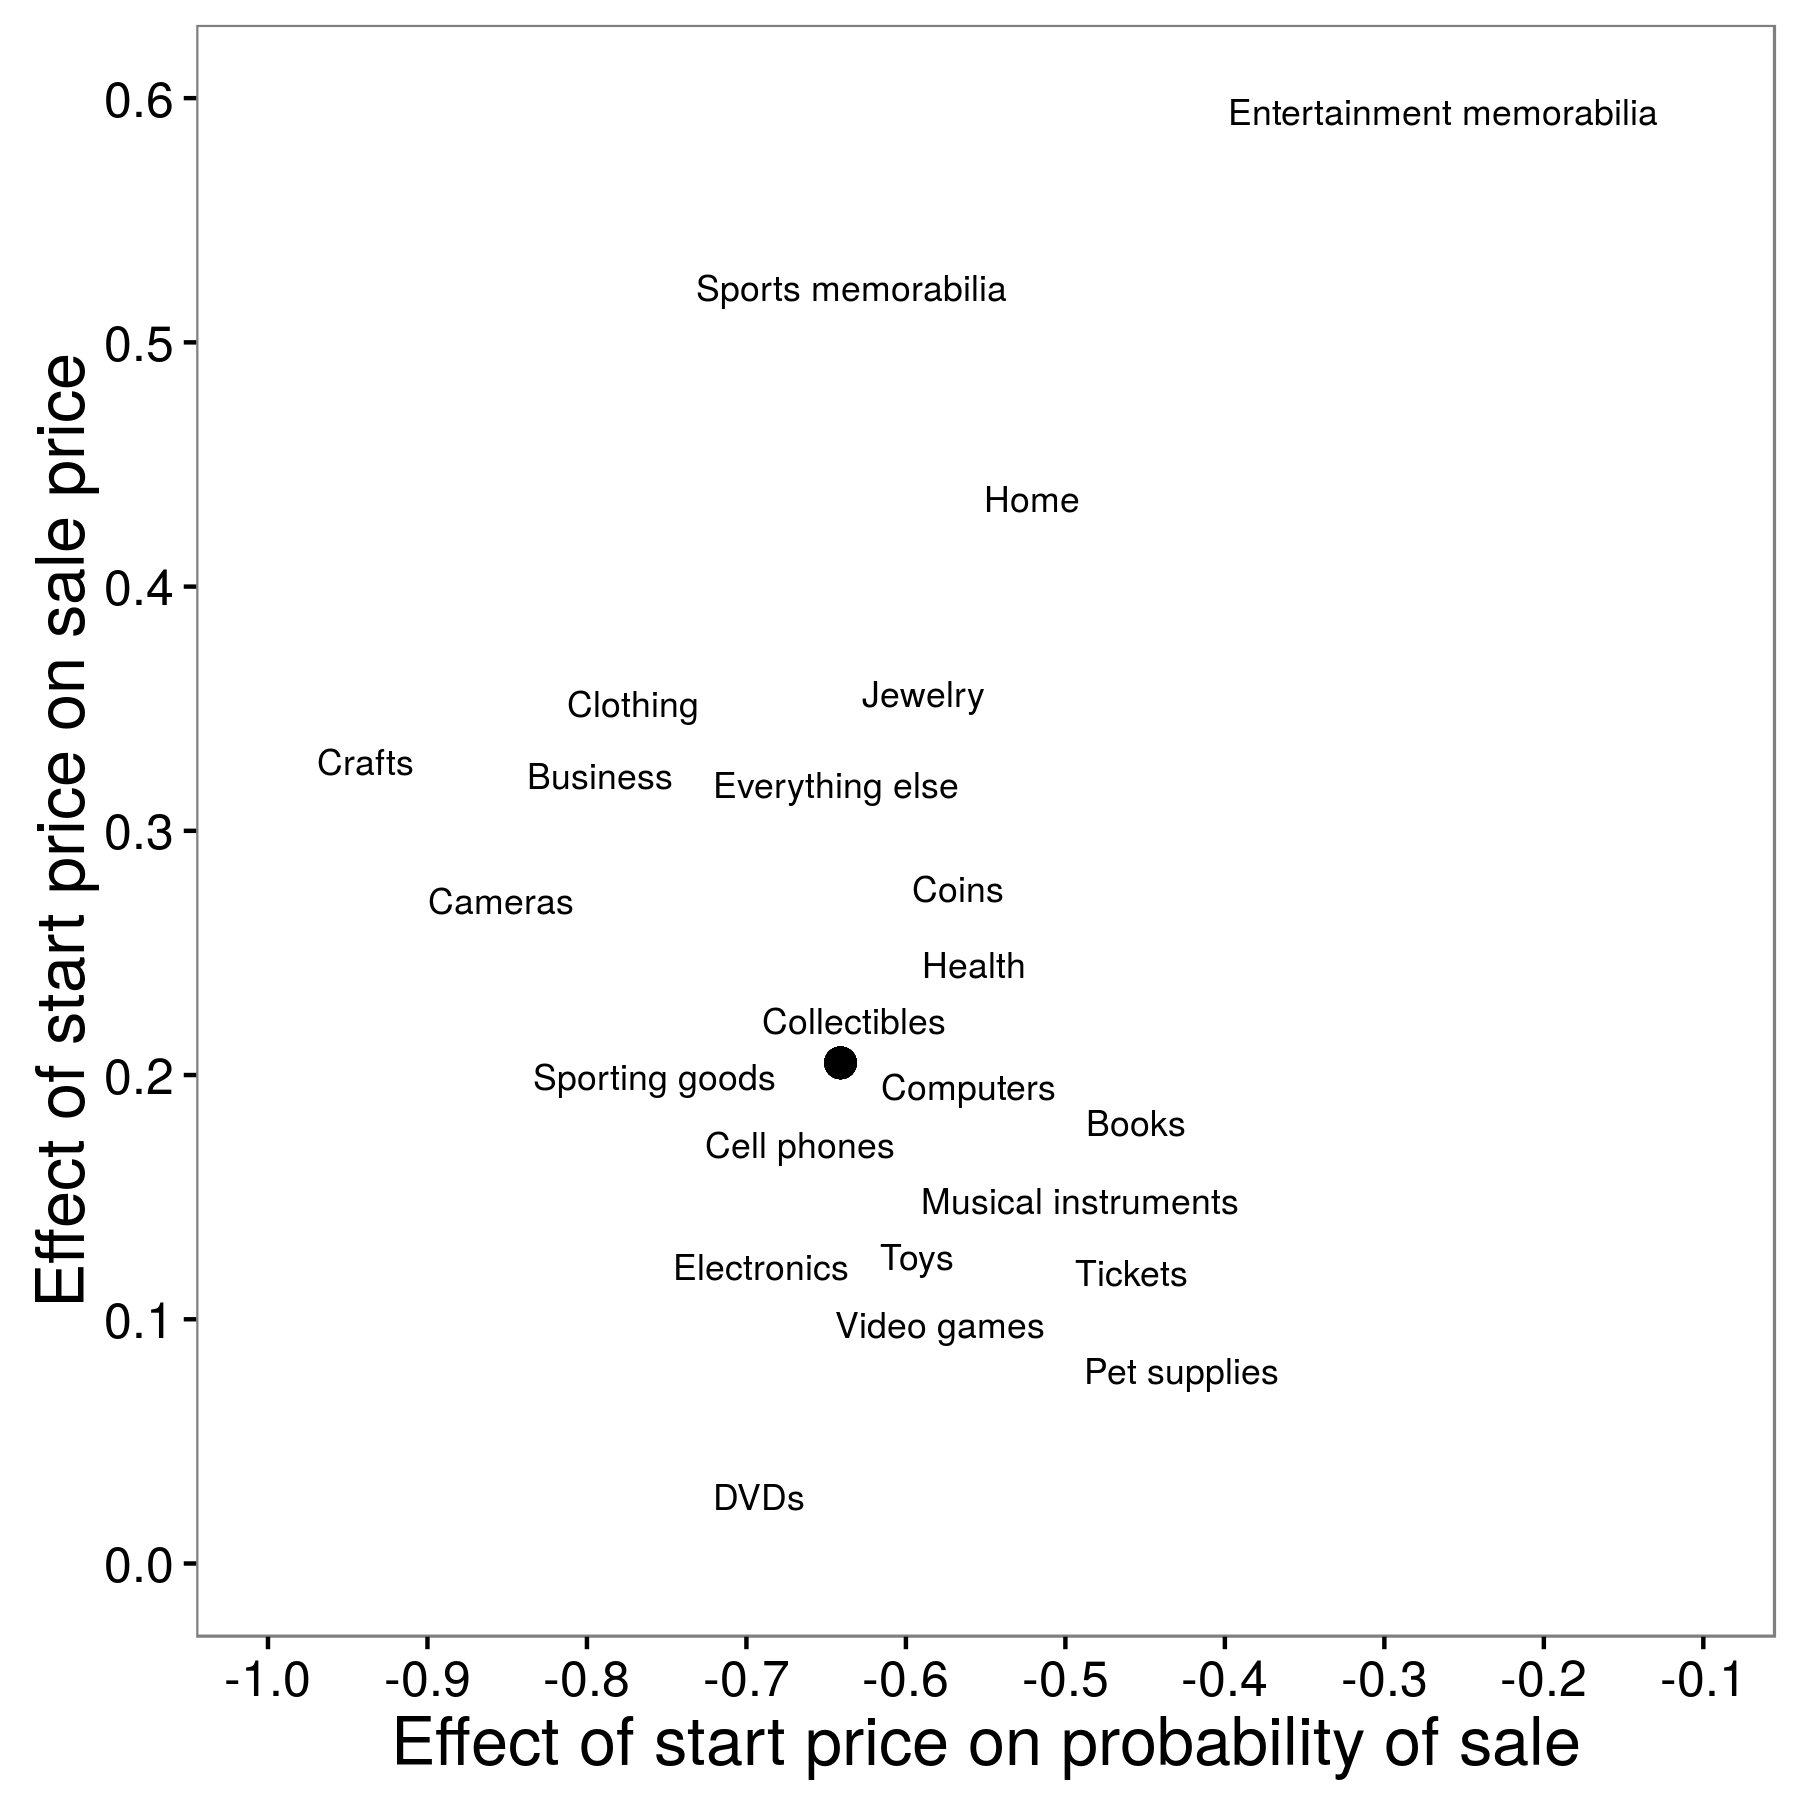 Фигура 2.10: Прогнози от всяка категория позиции; твърдата точка е оценката за всички категории, обединени заедно (Einav et al., 2015). Тези оценки показват, че за по-характерните елементи - като запомнящи се стоки - началната цена има по-малък ефект върху вероятността за продажба (оста x) и по-голям ефект върху крайната продажна цена (y-axis). Адаптирано от Einav et al. (2015), фигура 8.